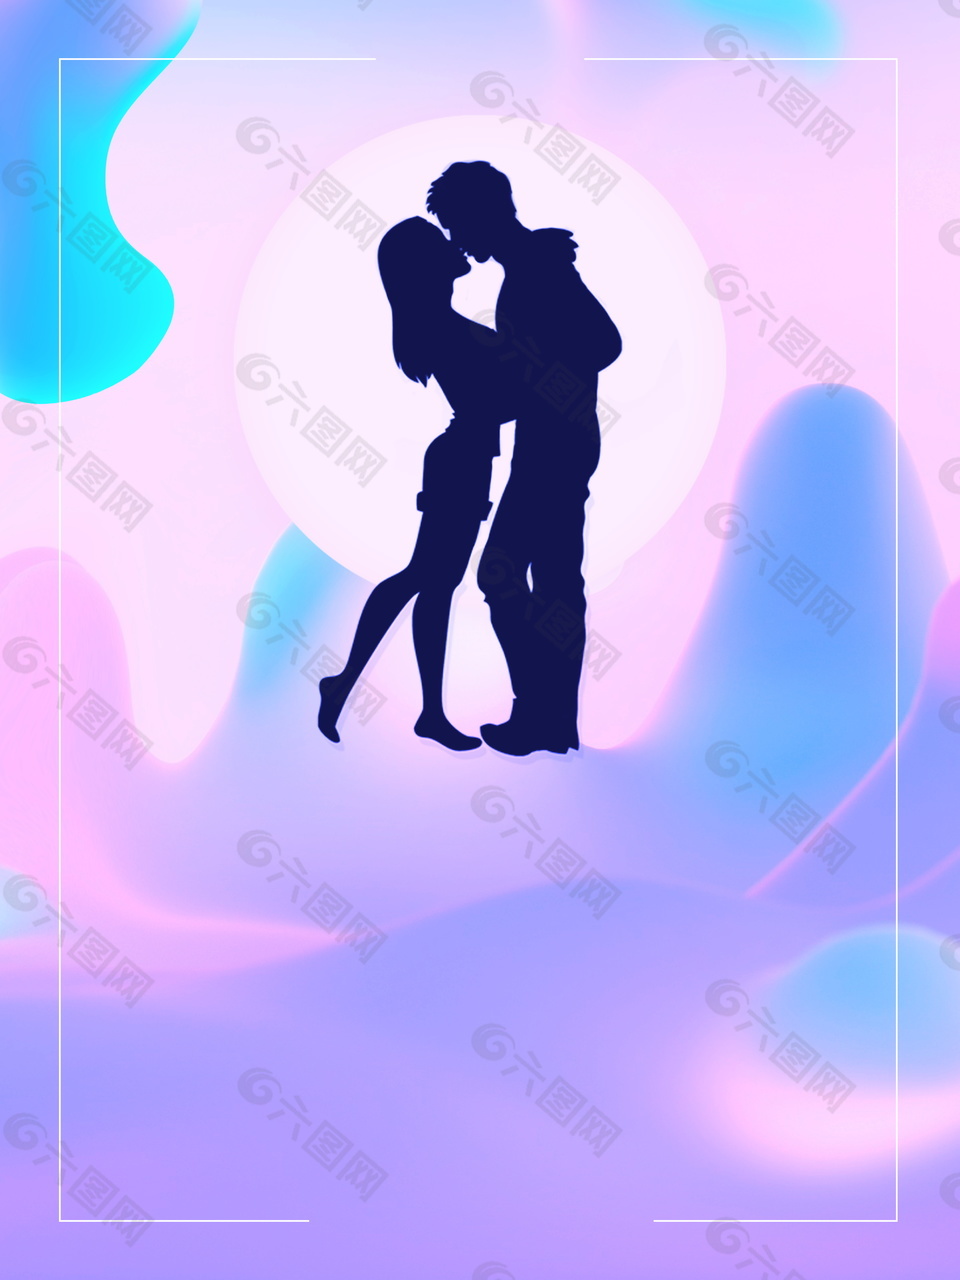 梦幻紫色国际接吻日背景素材